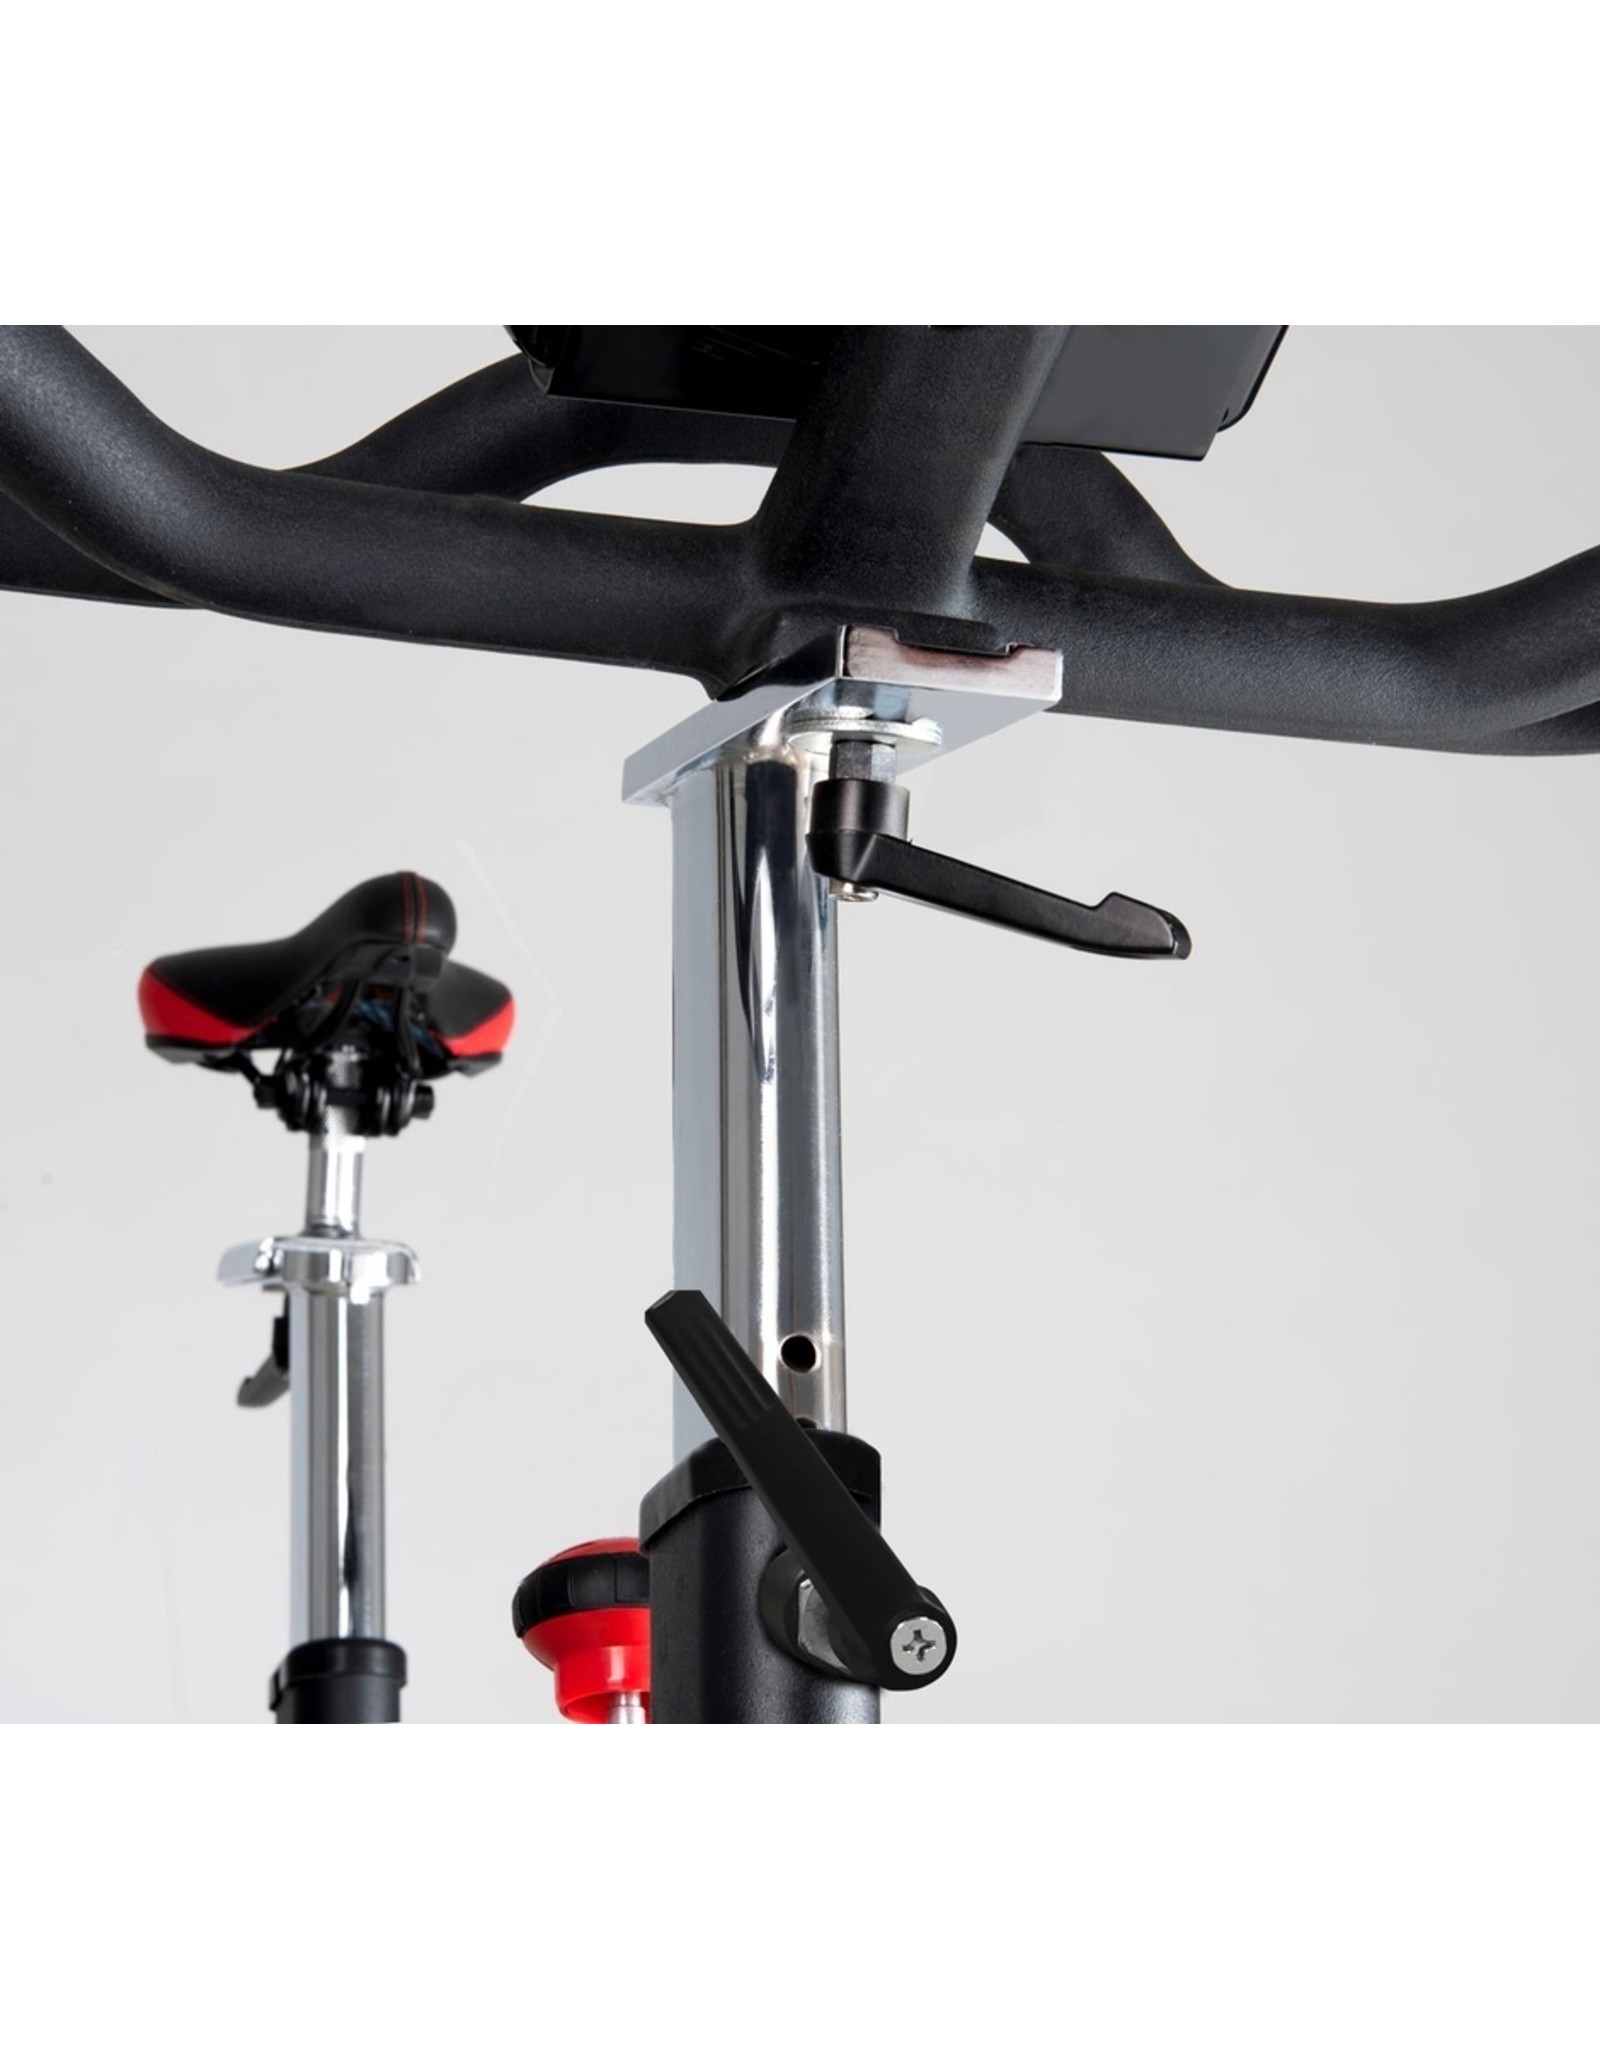 Toorx Fitness Toorx SRX-500 Indoor Cycle met Kinomap en programma's